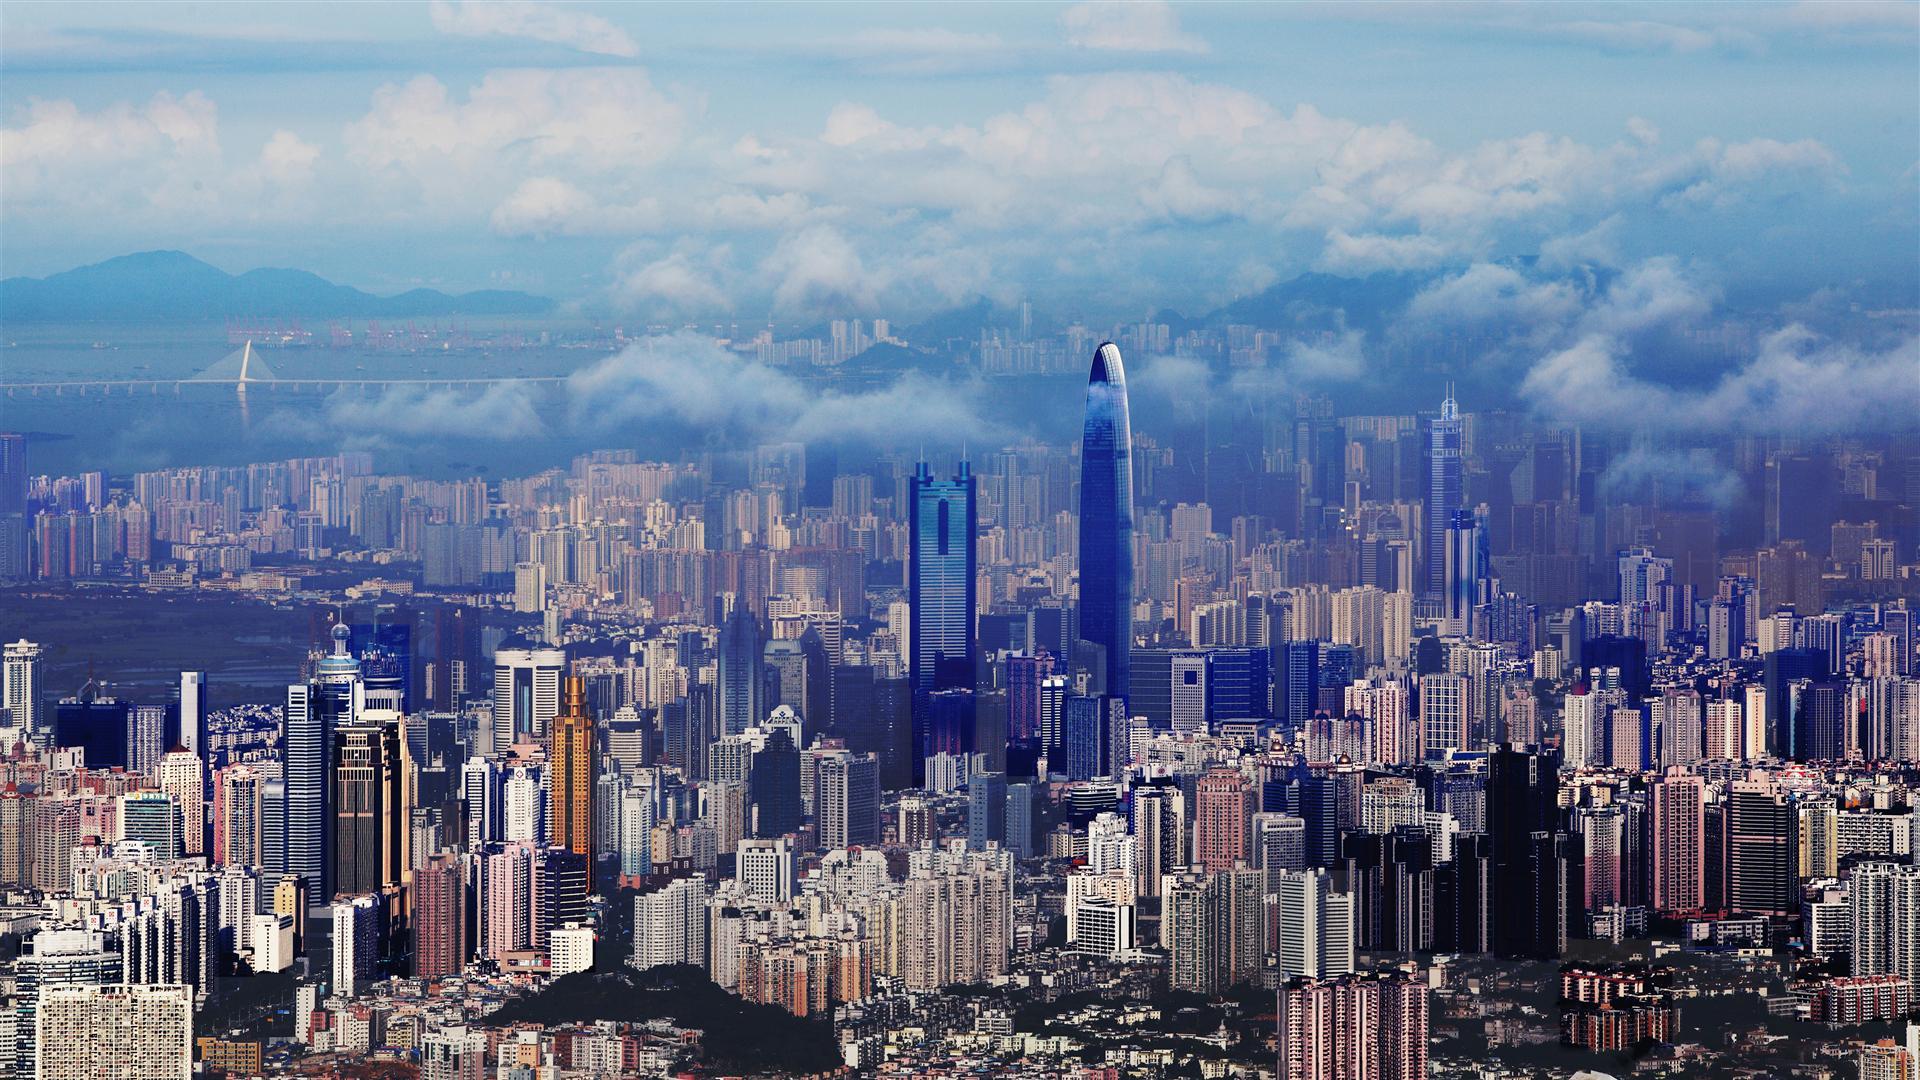 Le ministre des finances de Hong Kong prévoit un ralentissement de la croissance du PIB en